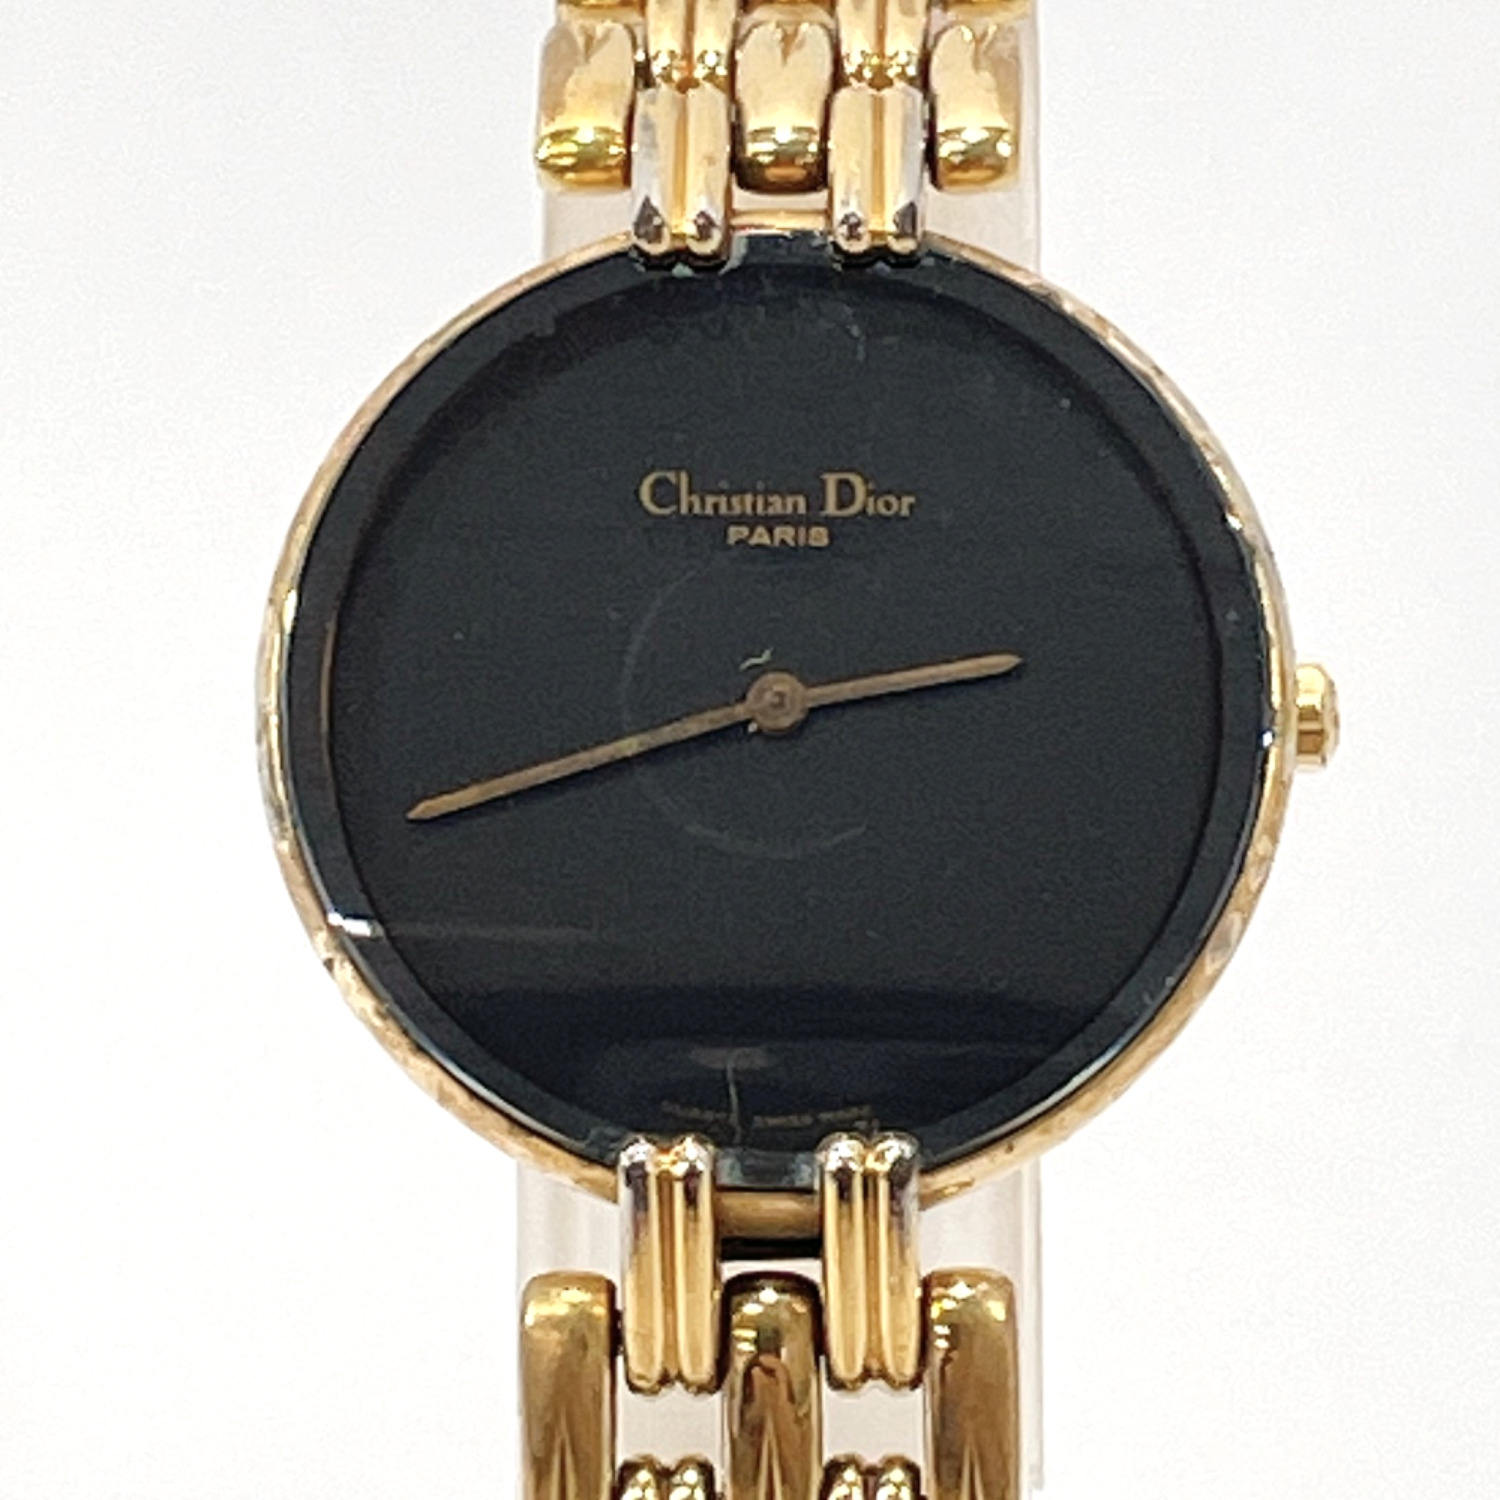 21120円 本物保証! Christian Diorの腕時計